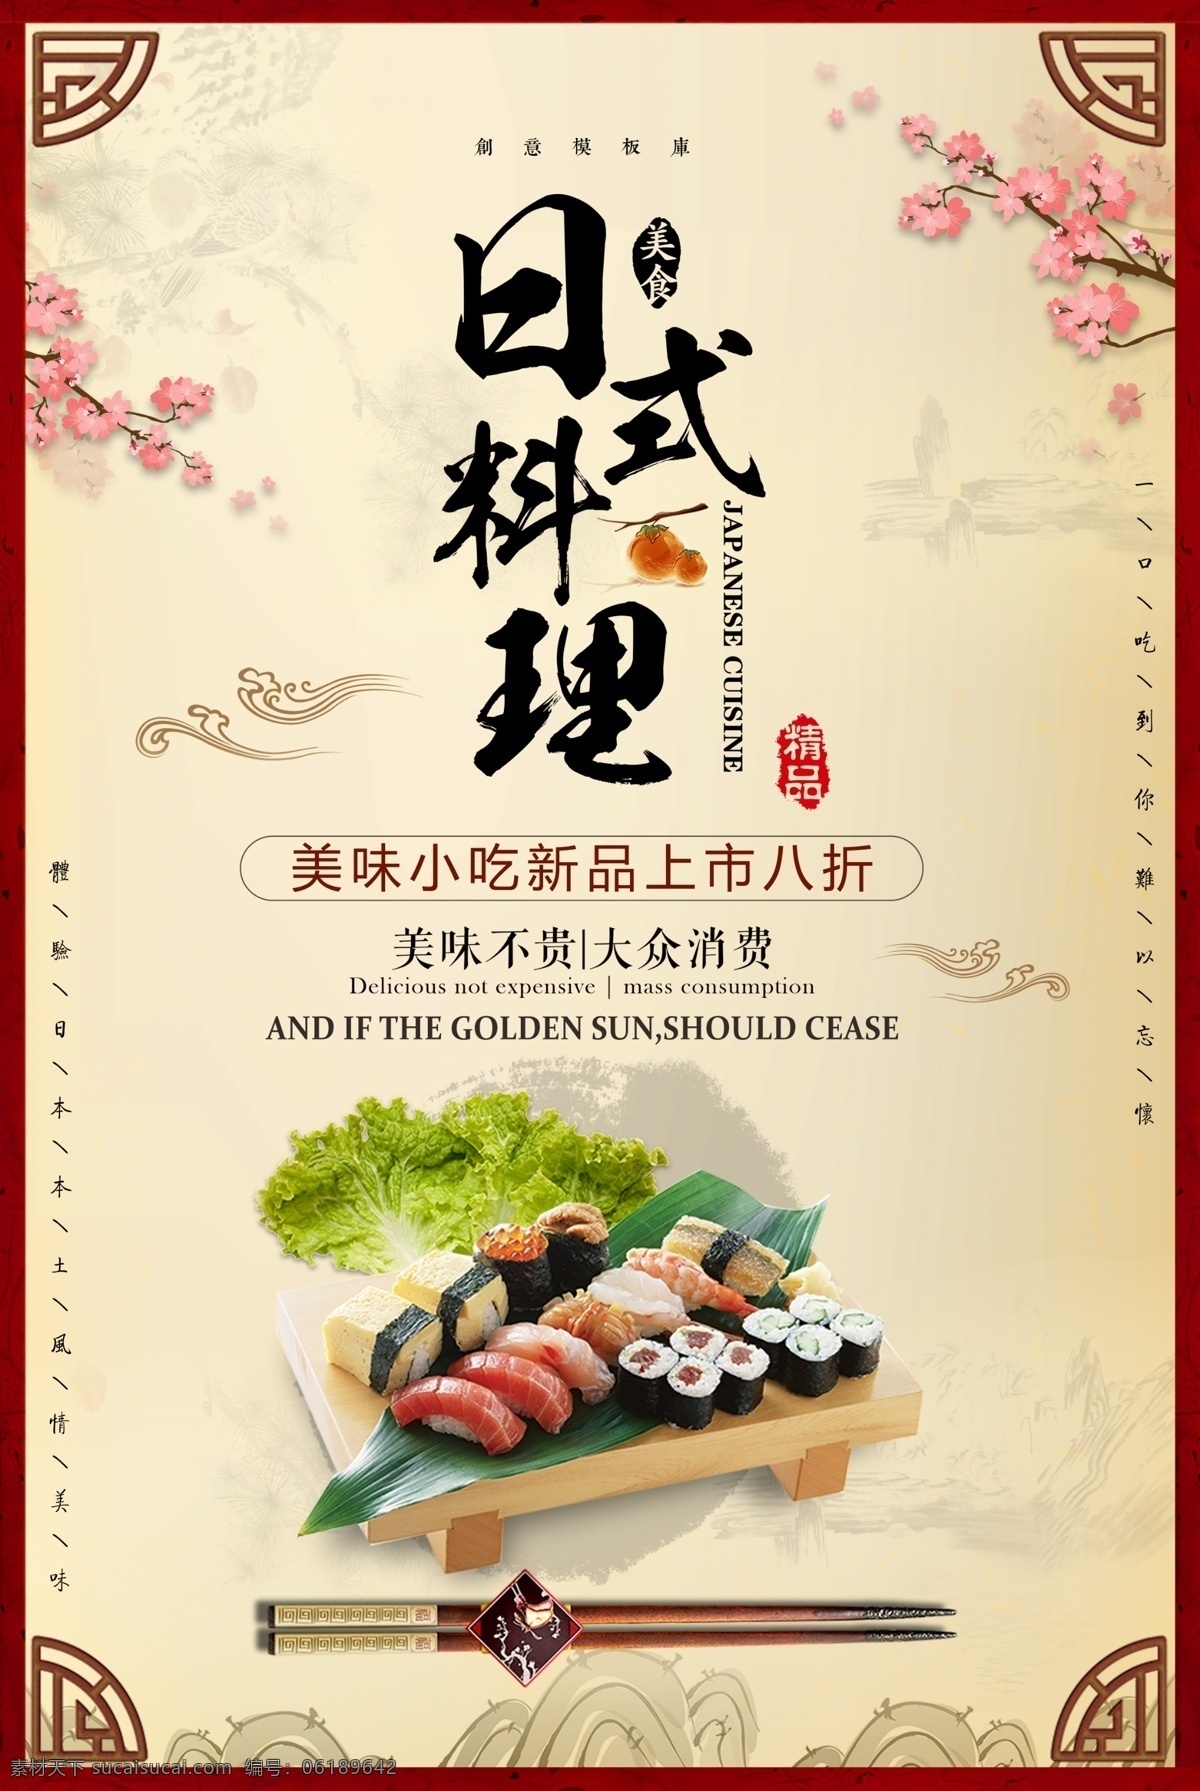 日式料理图片 日式料理 日本料理 寿司素材 寿司 料理 食品海报 dm宣传单